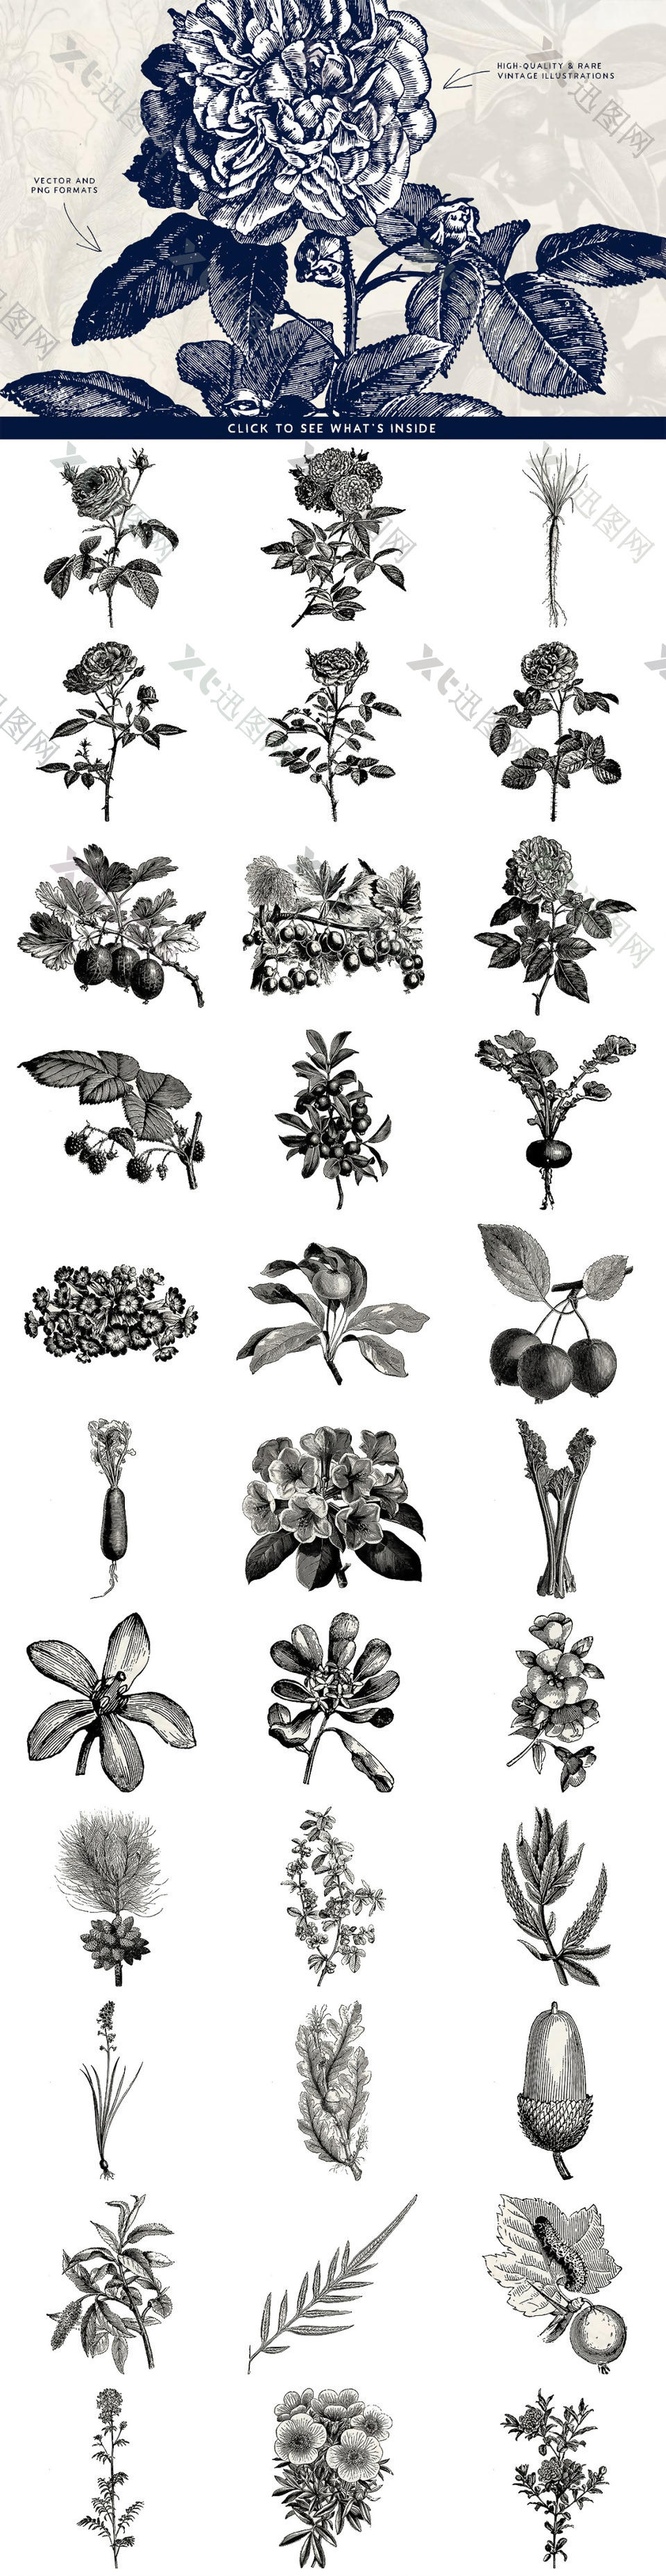 素描手绘黑白植物蔬菜水果插画